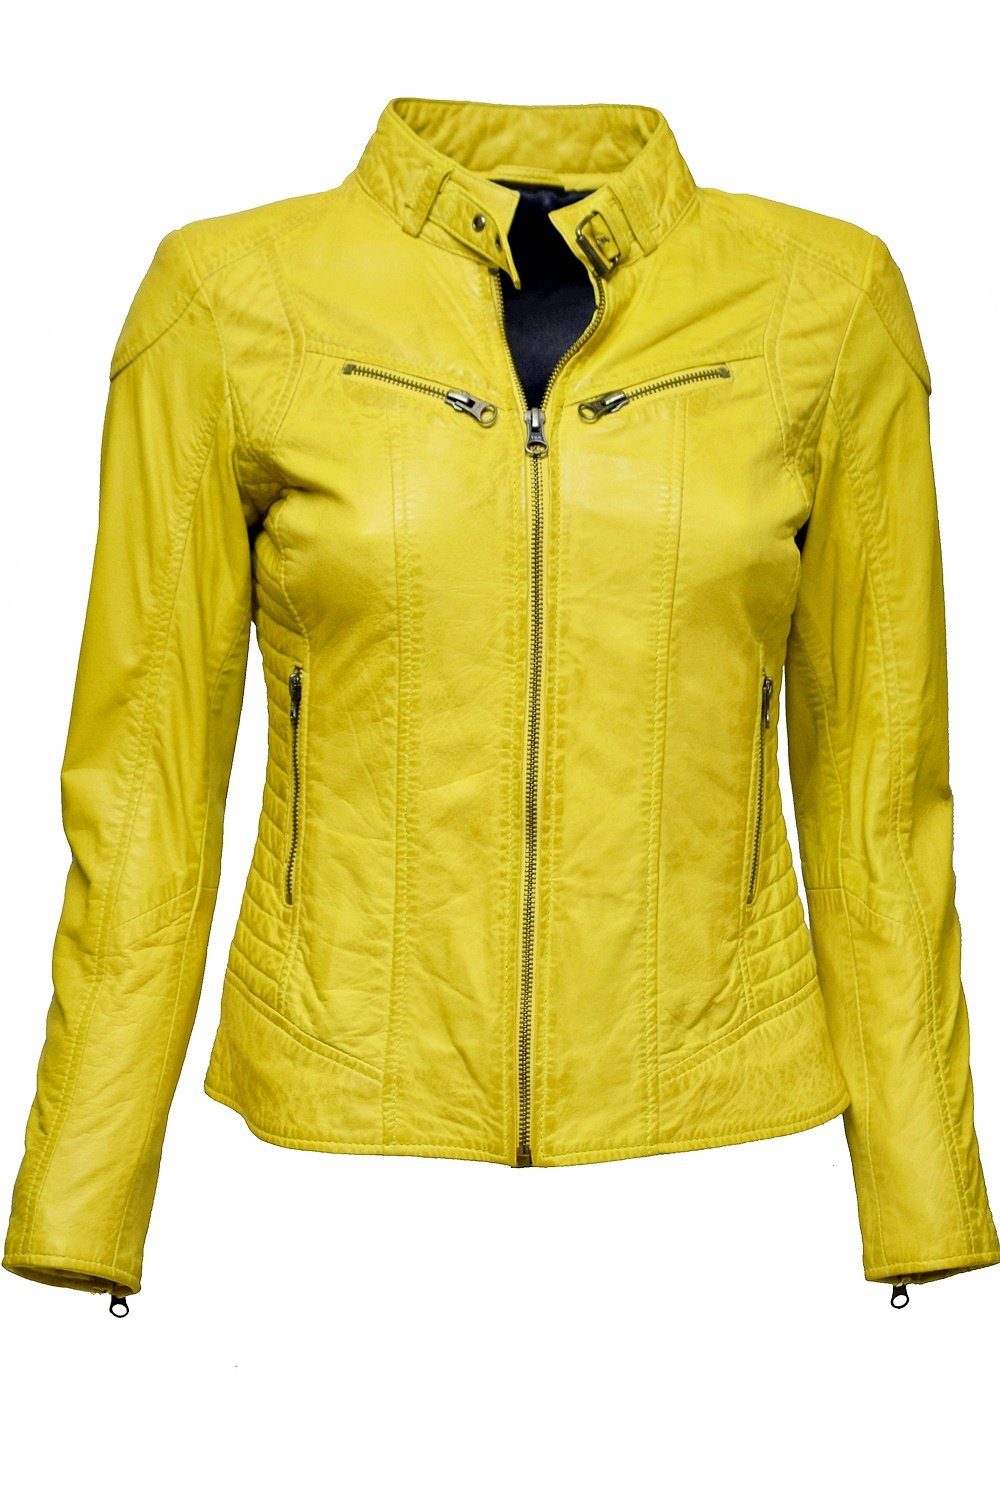 Gelbe Damen-Lederjacke online kaufen | OTTO